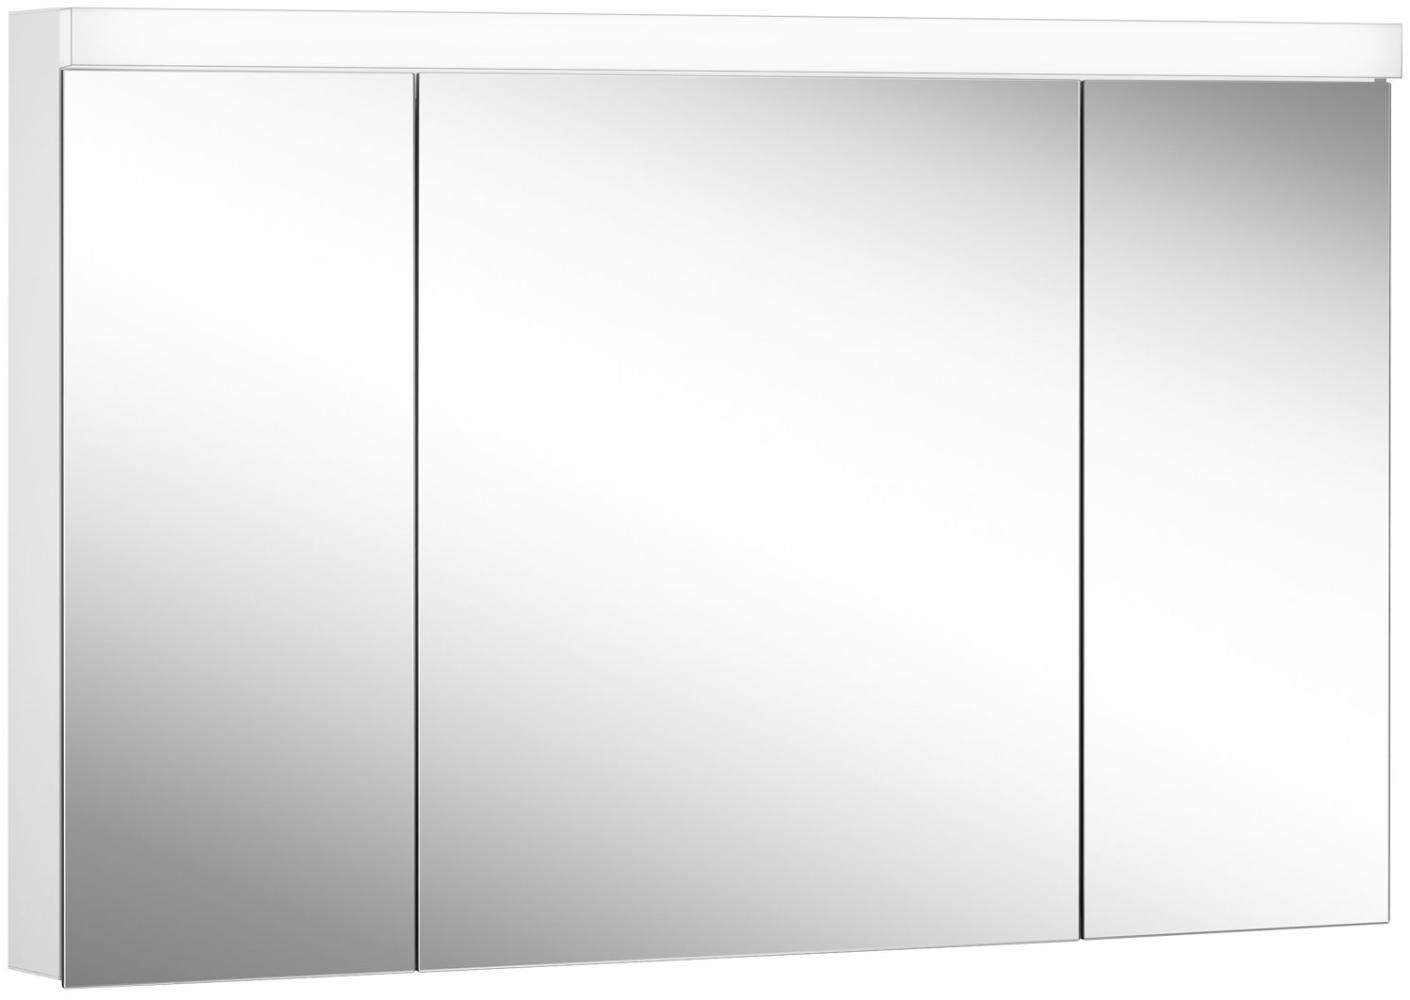 Schneider DAILY Line Ultimate LED Lichtspiegelschrank, 3 Doppelspiegeltüren, 120x74,8x13cm, 178. 121. 02. 02, Ausführung: EU-Norm/Korpus weiss - 178. 121. 02. 02 Bild 1